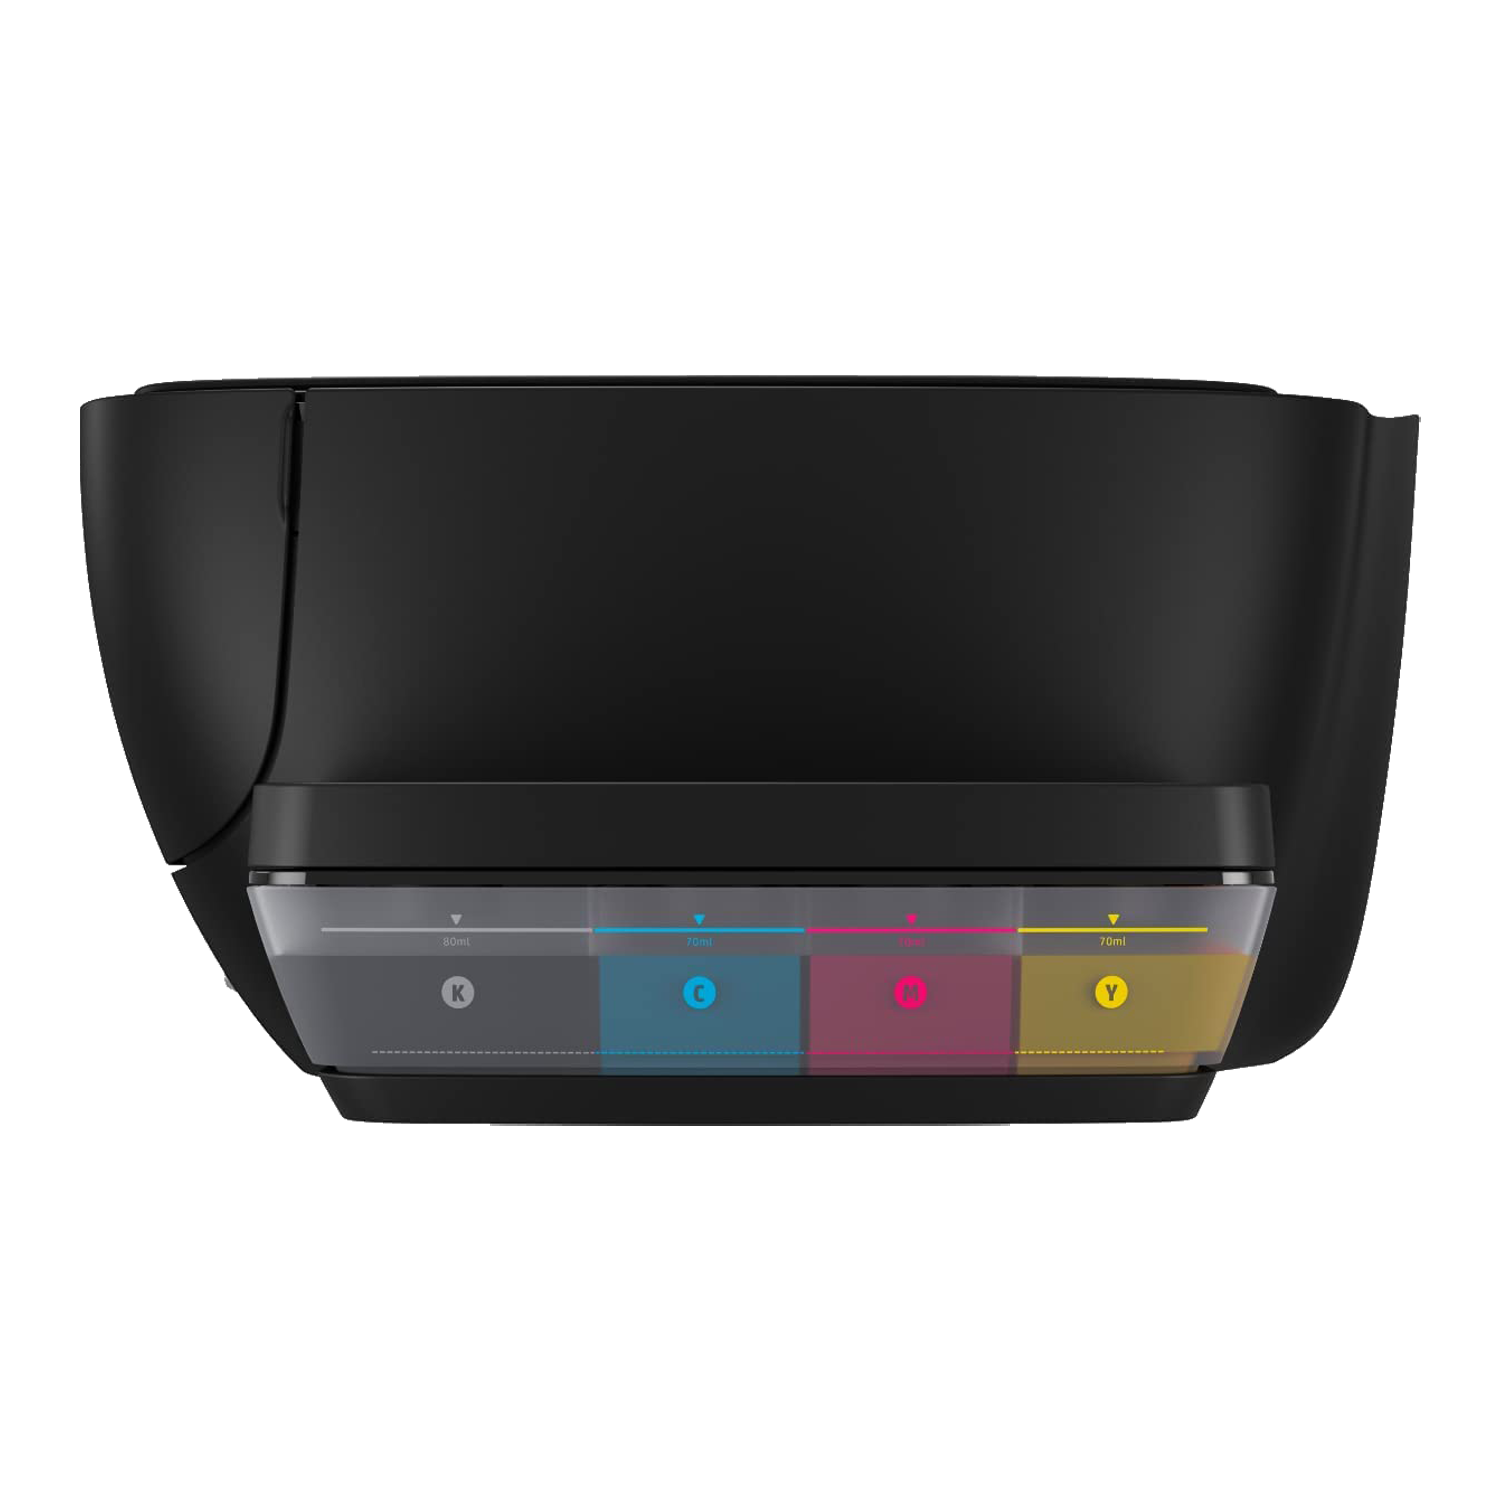 Impressora Multifuncional HP Ink Tank 416 WiFi / Bivolt - Preto